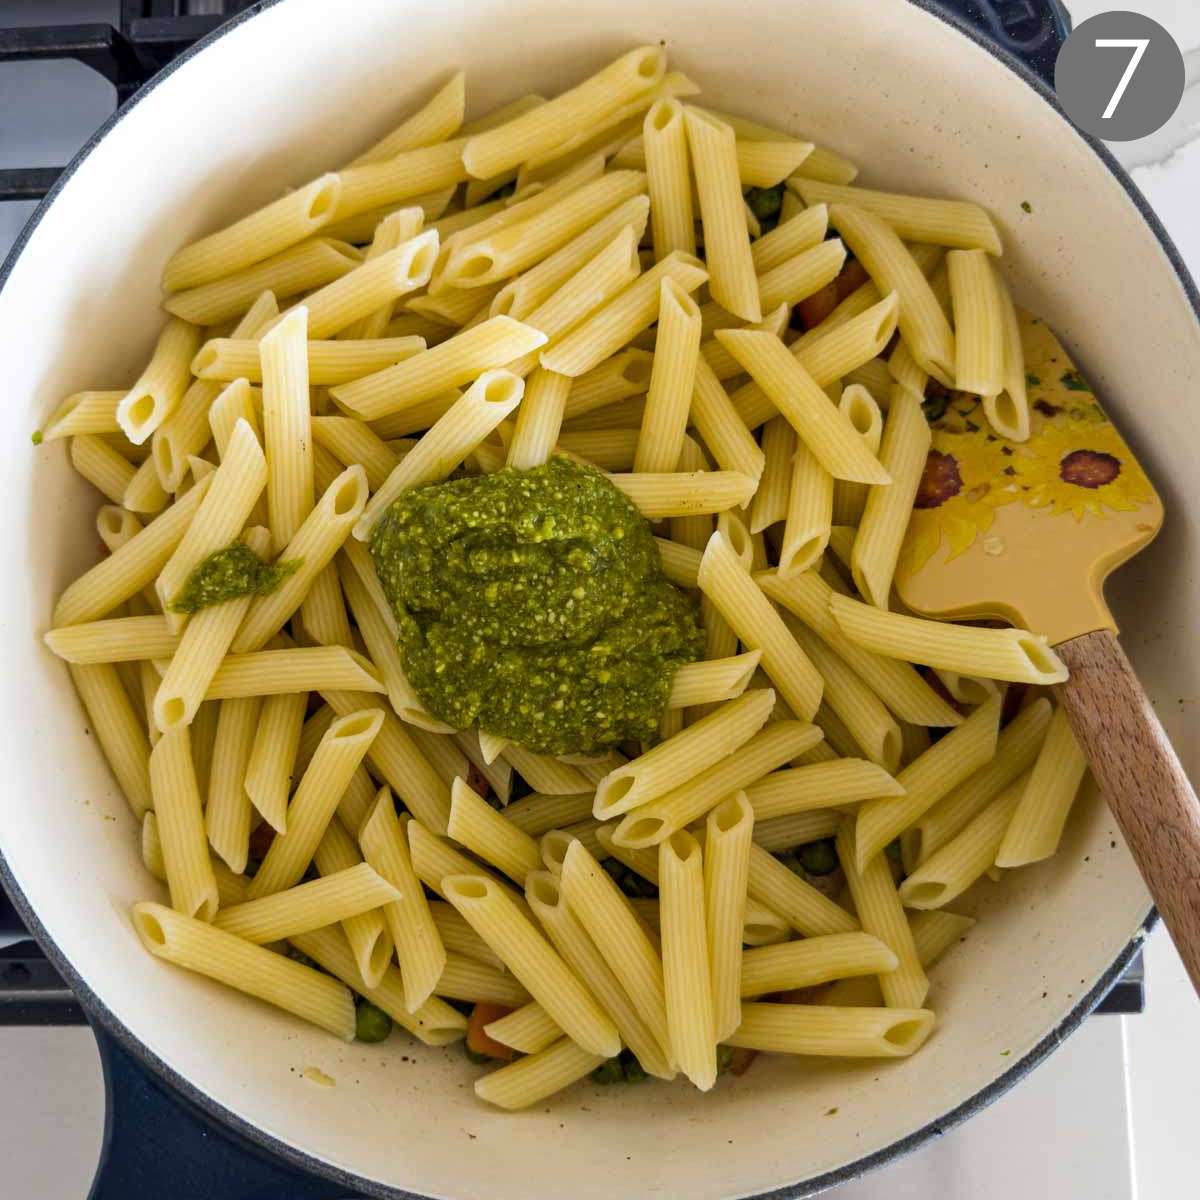 Green peas, pasta and pesto ready to mix. 